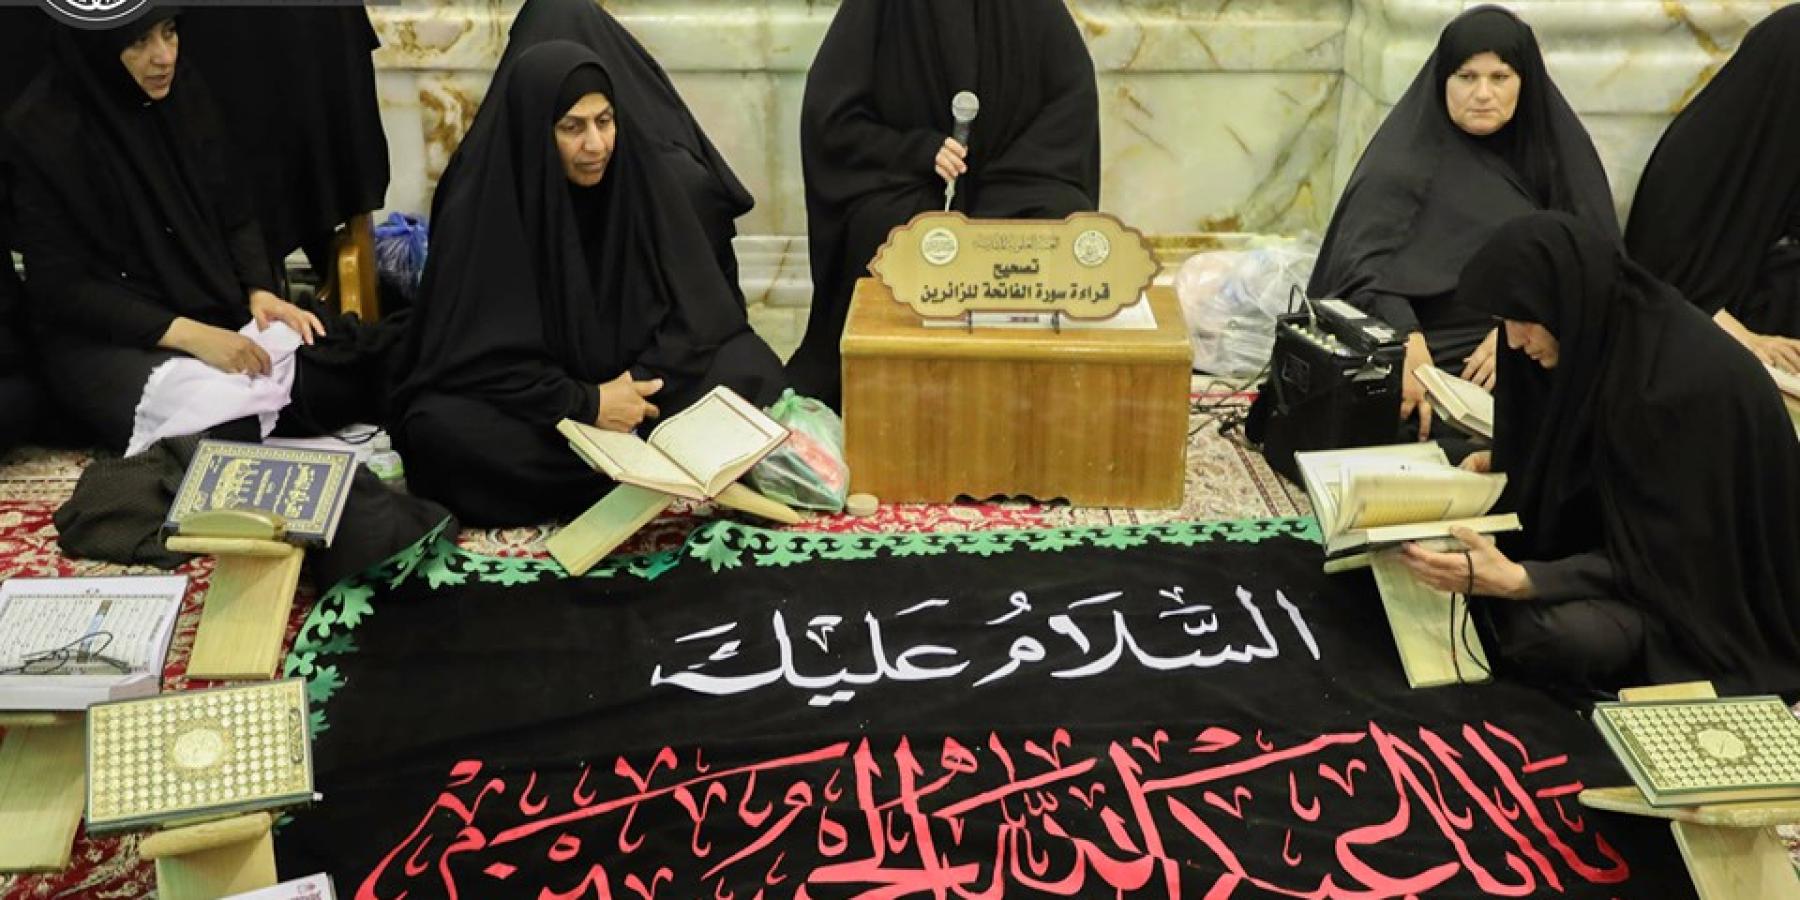 دار القرآن النسوي في العتبة العلوية تنشر (10) استراحات قرآنية داخل العتبة العلوية وخارجها